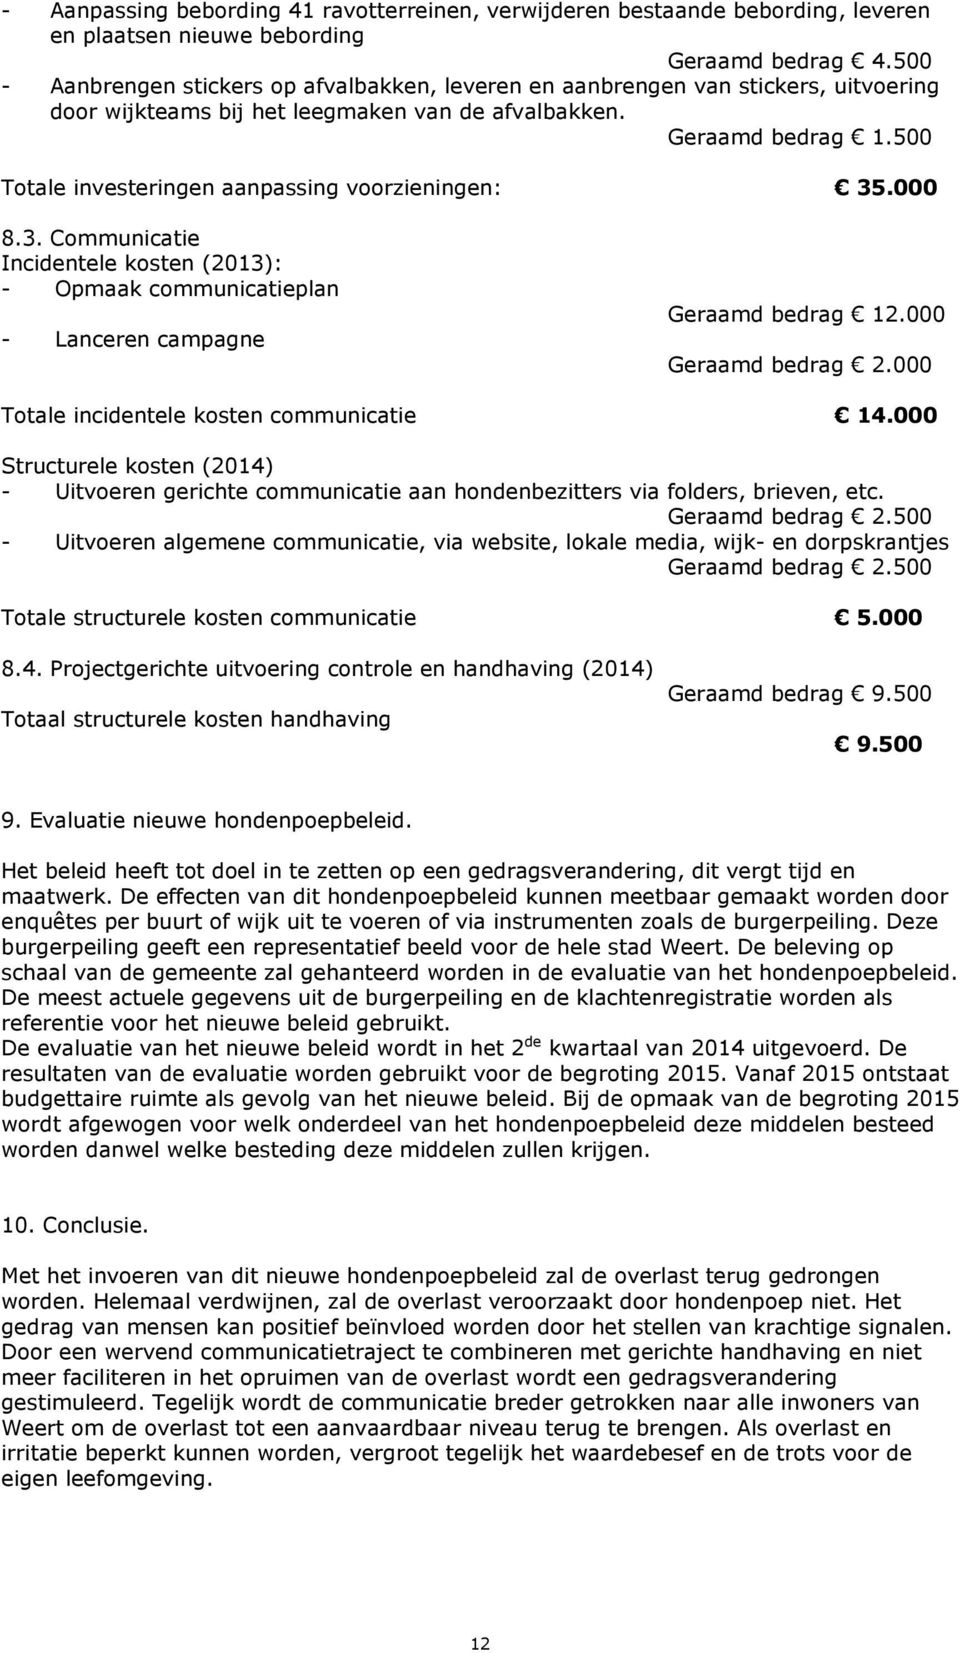 500 Totale investeringen aanpassing voorzieningen: 35.000 8.3. Communicatie Incidentele kosten (2013): - Opmaak communicatieplan - Lanceren campagne Geraamd bedrag 12.000 Geraamd bedrag 2.